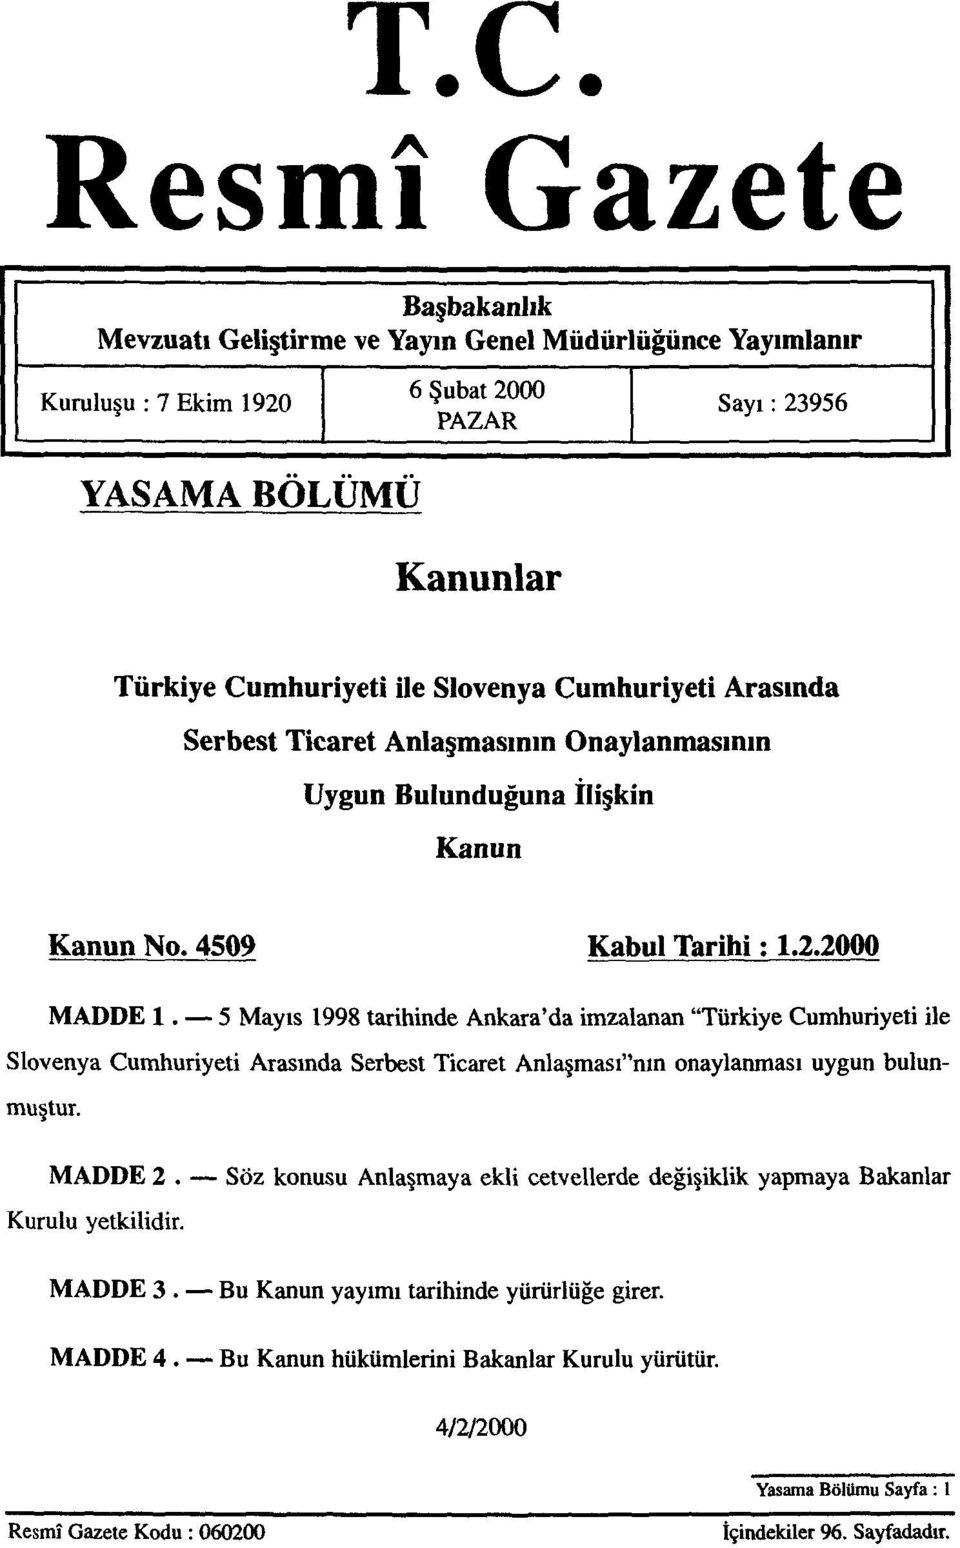 5 Mayıs 1998 tarihinde Ankara'da imzalanan "Türkiye Cumhuriyeti ile Slovenya Cumhuriyeti Arasında Serbest Ticaret Anlaşması"nın onaylanması uygun bulunmuştur. MADDE 2.